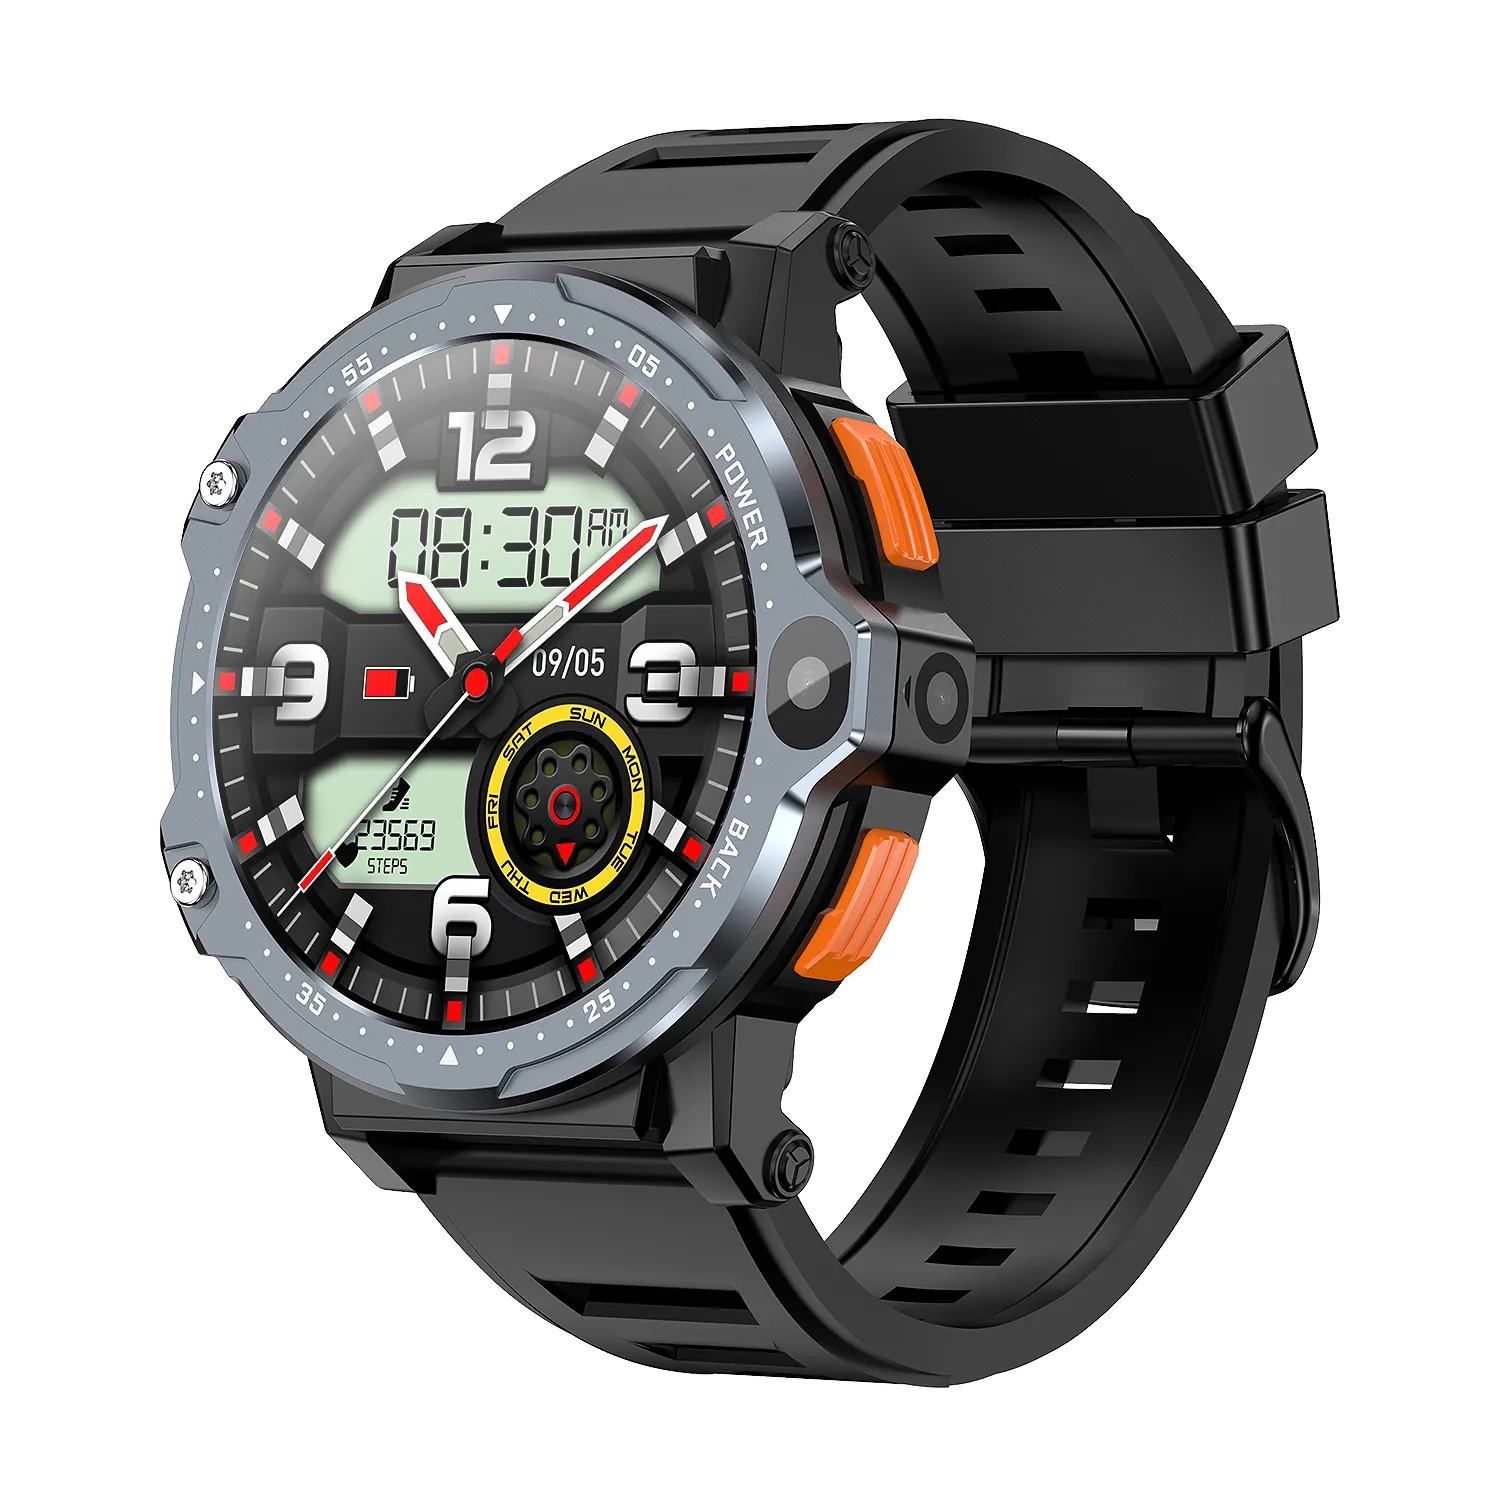 Jam tangan pintar 4G, jam tangan pintar Android panggilan Video 1.54 inci CUP Quad-core PG999 Pro SOS jam tangan olahraga